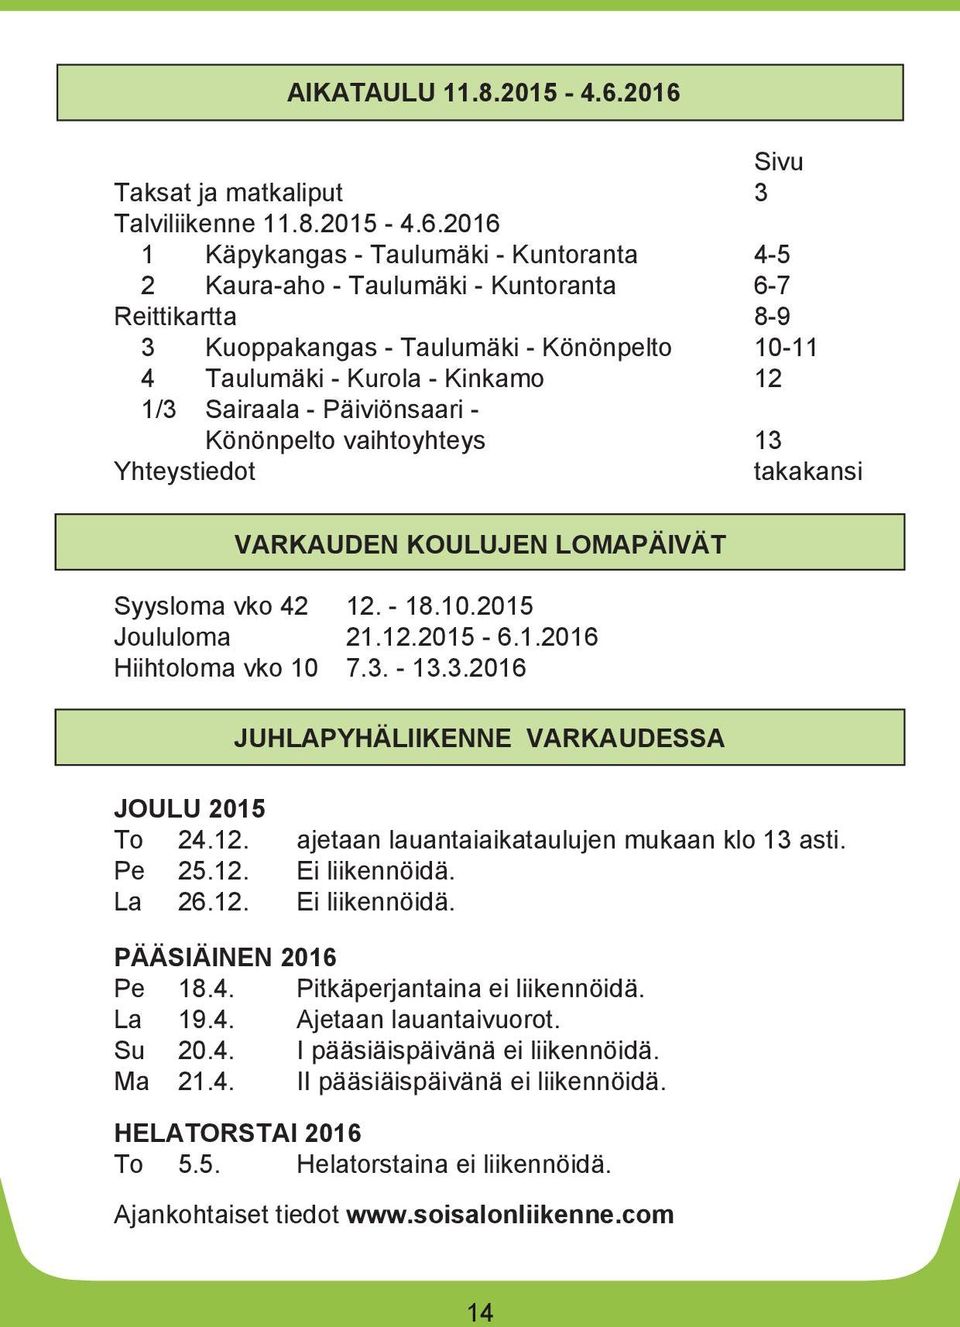 4 Taulumäki - Kurola - Kinkamo 1/3 Sairaala - Päiviönsaari - Könönpelto vaihtoyhteys Yhteystiedot takakansi VARKAUDEN KOULUJEN LOMAPÄIVÄT Syysloma vko 42. - 18.. Joululoma 21.. - 6.1.16 Hiihtoloma vko 7.